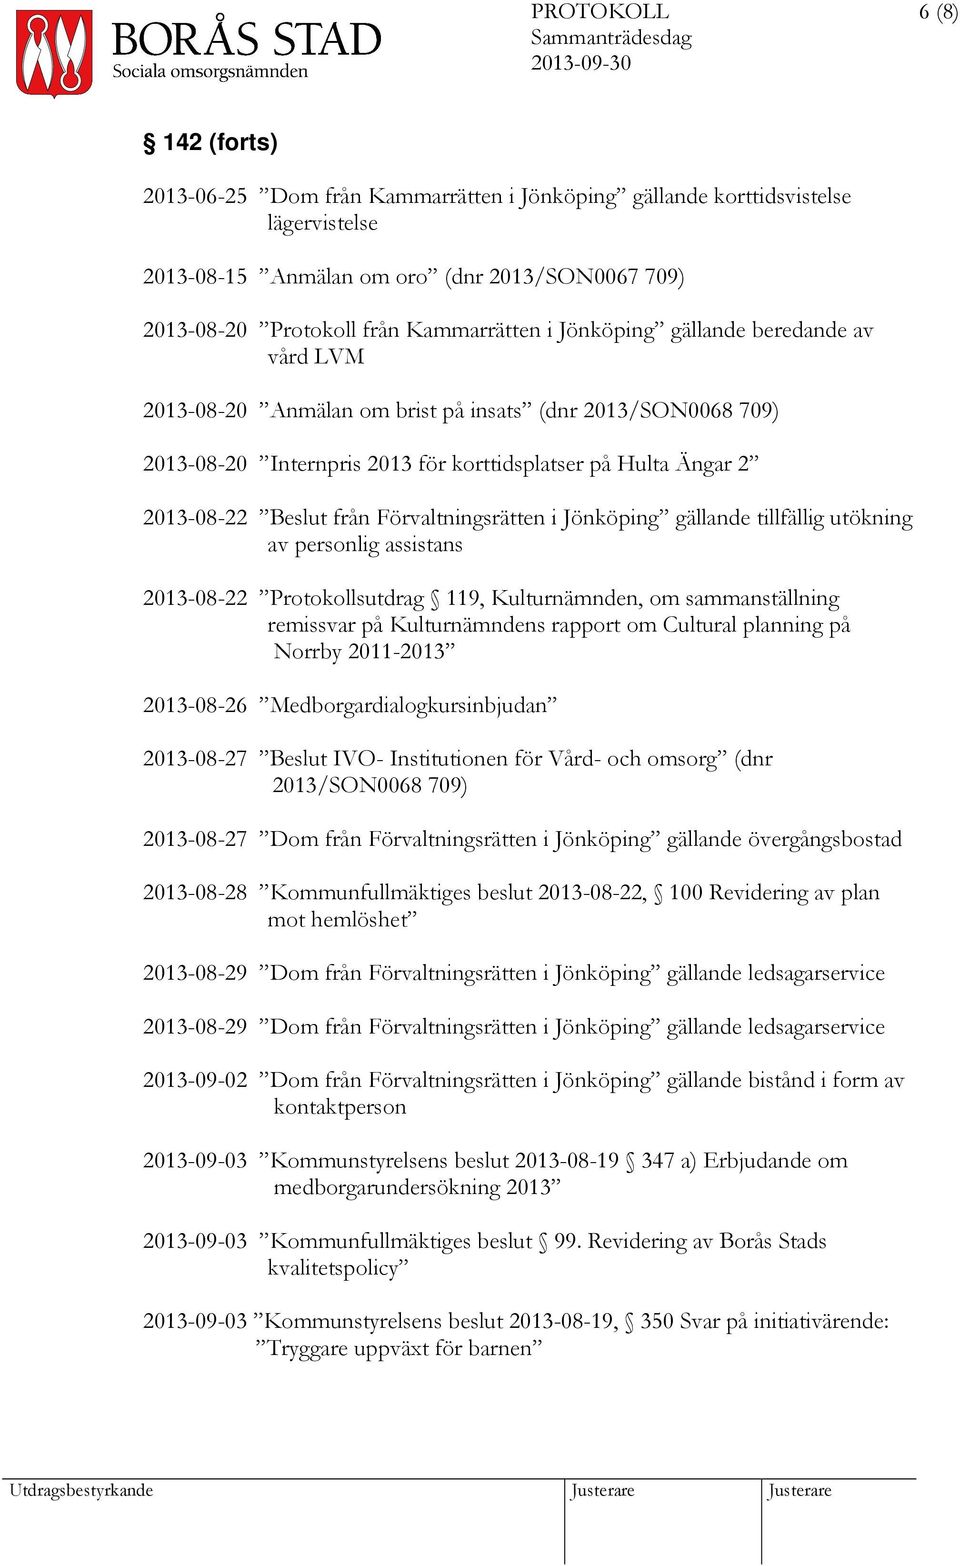 Förvaltningsrätten i Jönköping gällande tillfällig utökning av personlig assistans 2013-08-22 Protokollsutdrag 119, Kulturnämnden, om sammanställning remissvar på Kulturnämndens rapport om Cultural